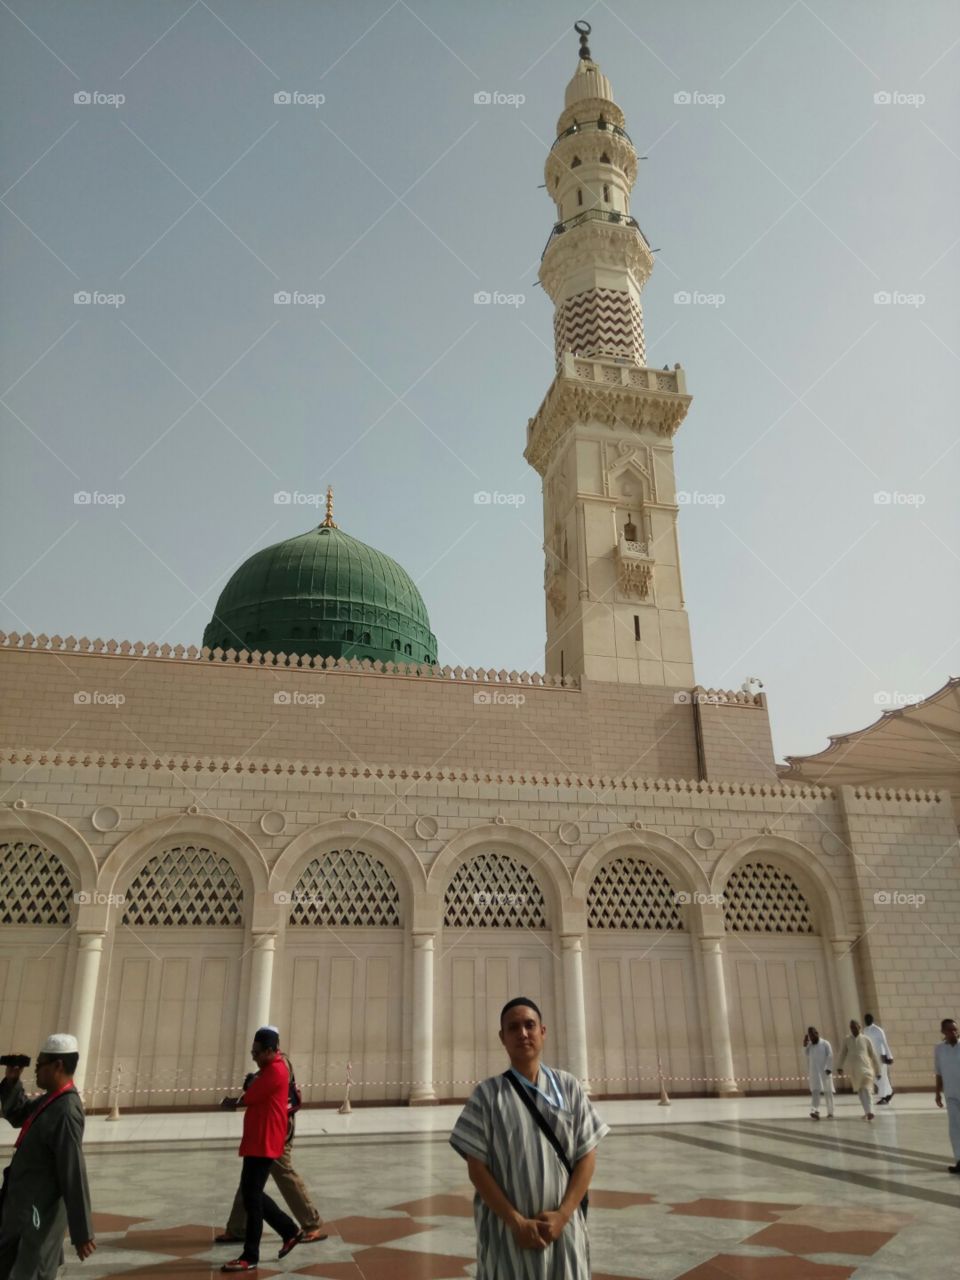 Minaret, Architecture, Religion, Travel, Dome